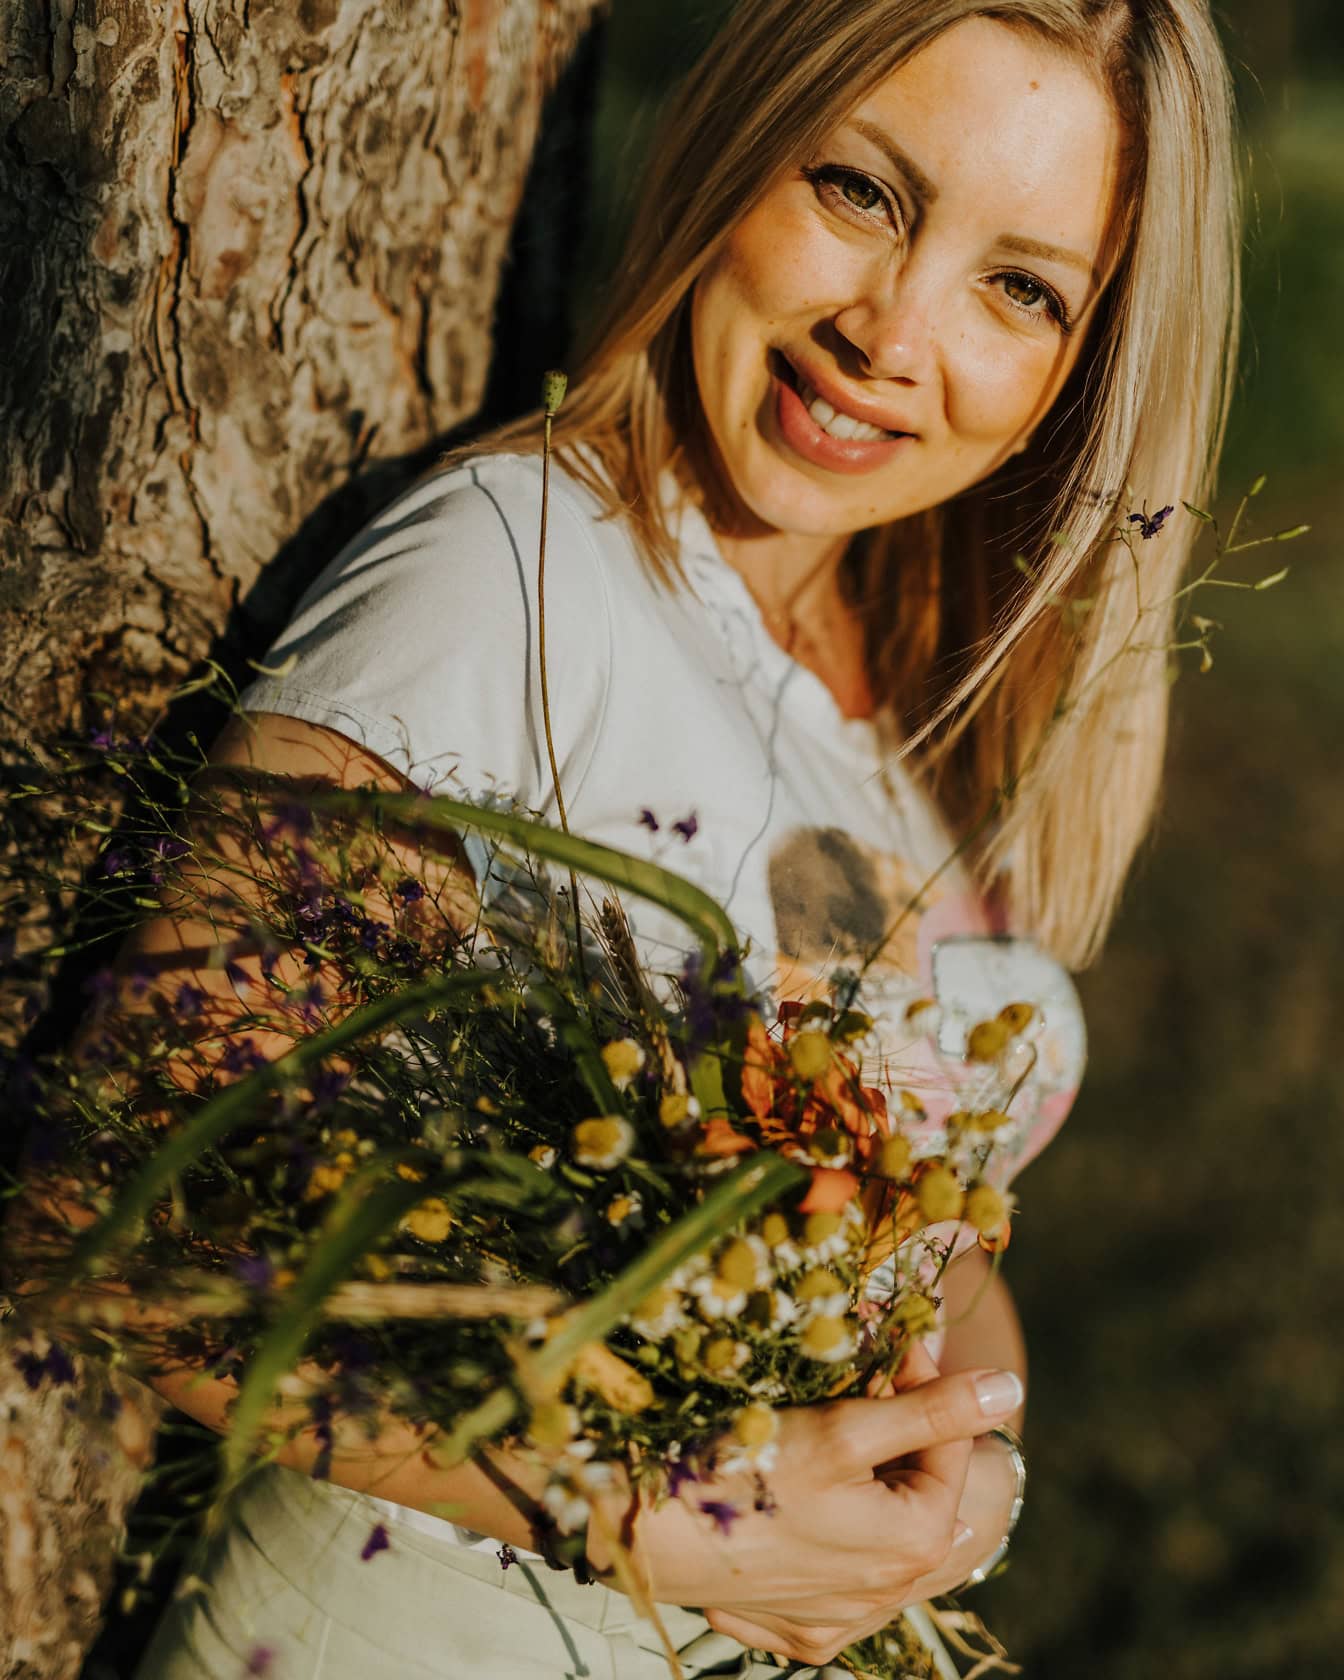 Portret van een glimlachende blonde vrouw die op een boom leunt terwijl ze een boeket van wilde bloemen vasthoudt